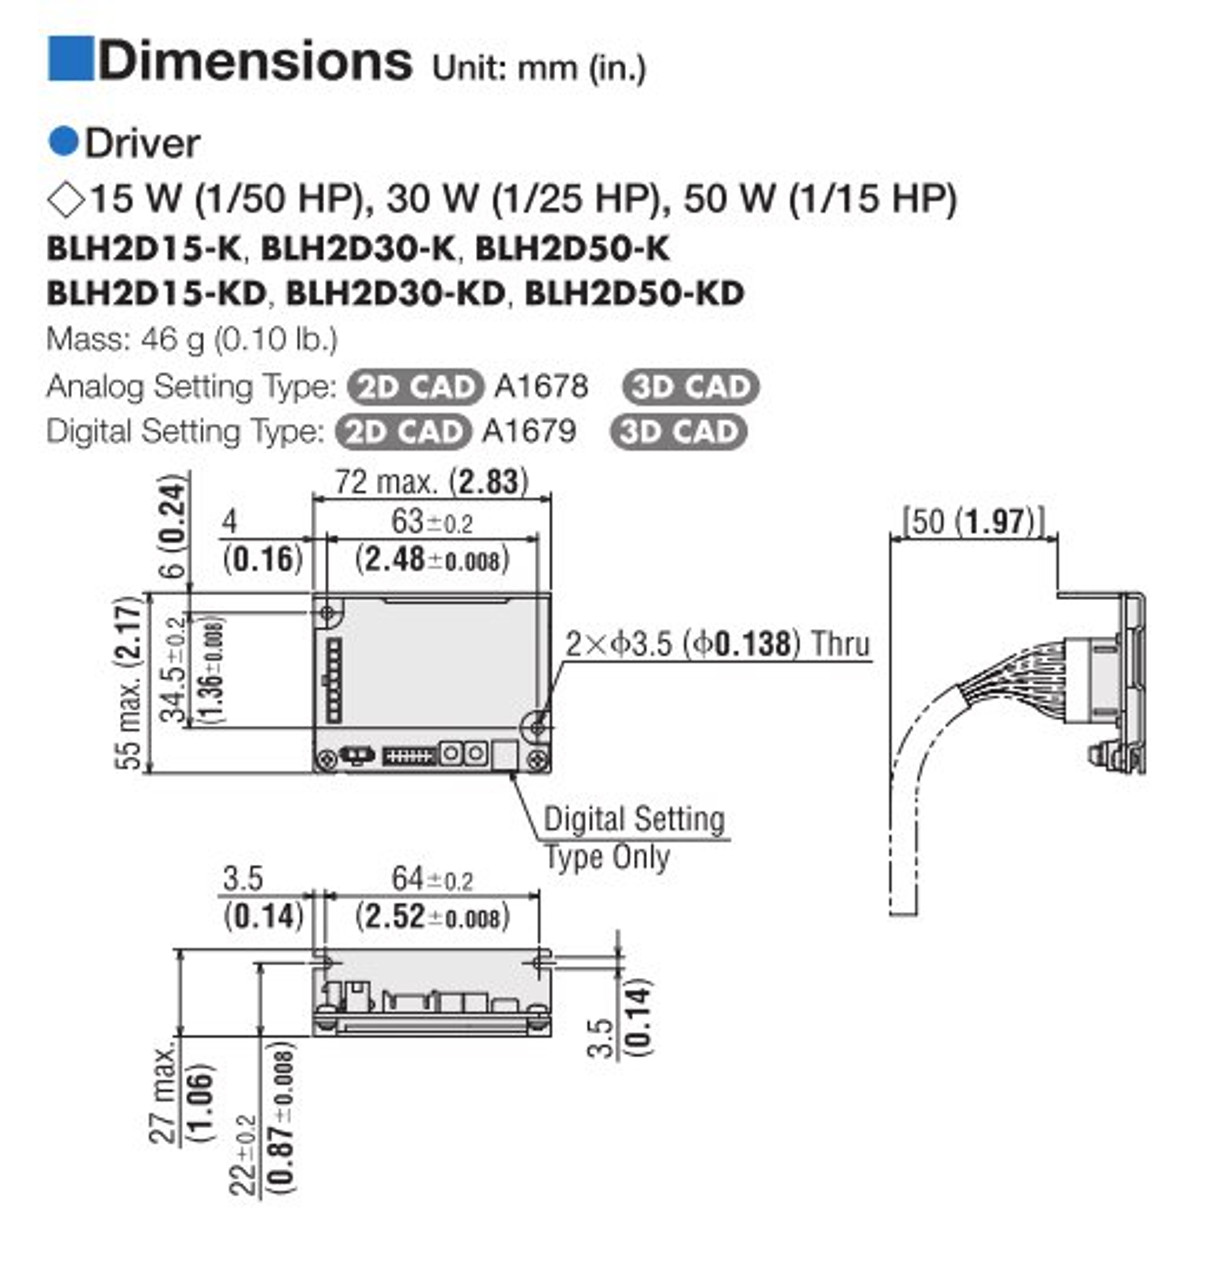 BLHM015K-10 / BLH2D15-K - Dimensions